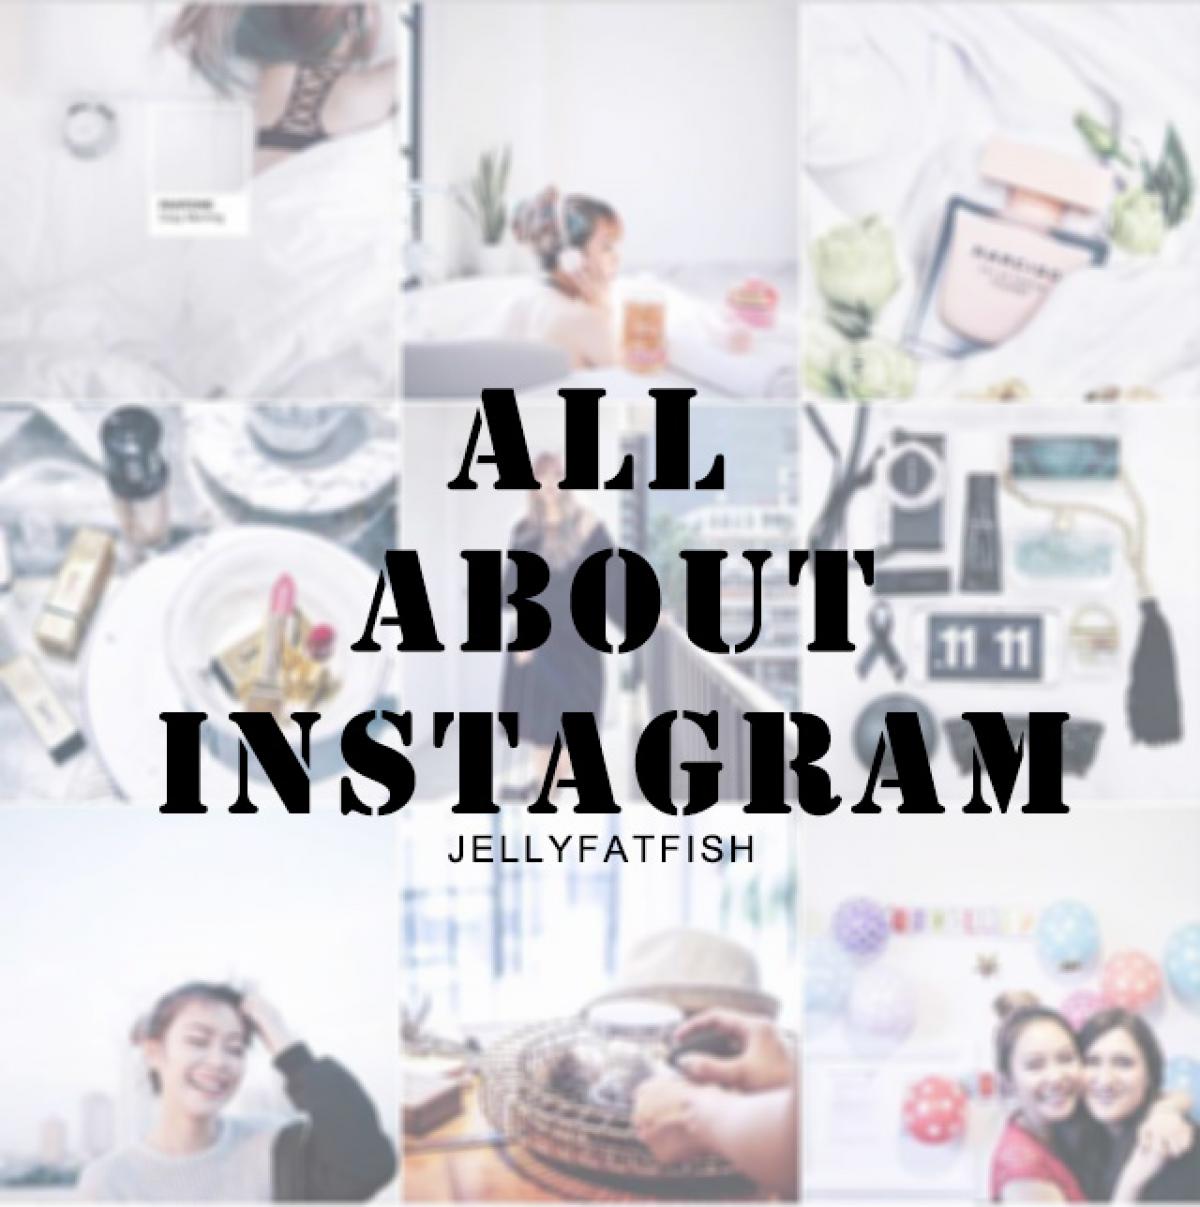 เล่น Instagram ให้สนุก ด้วยการโพสรูปอย่างมีสไตล์